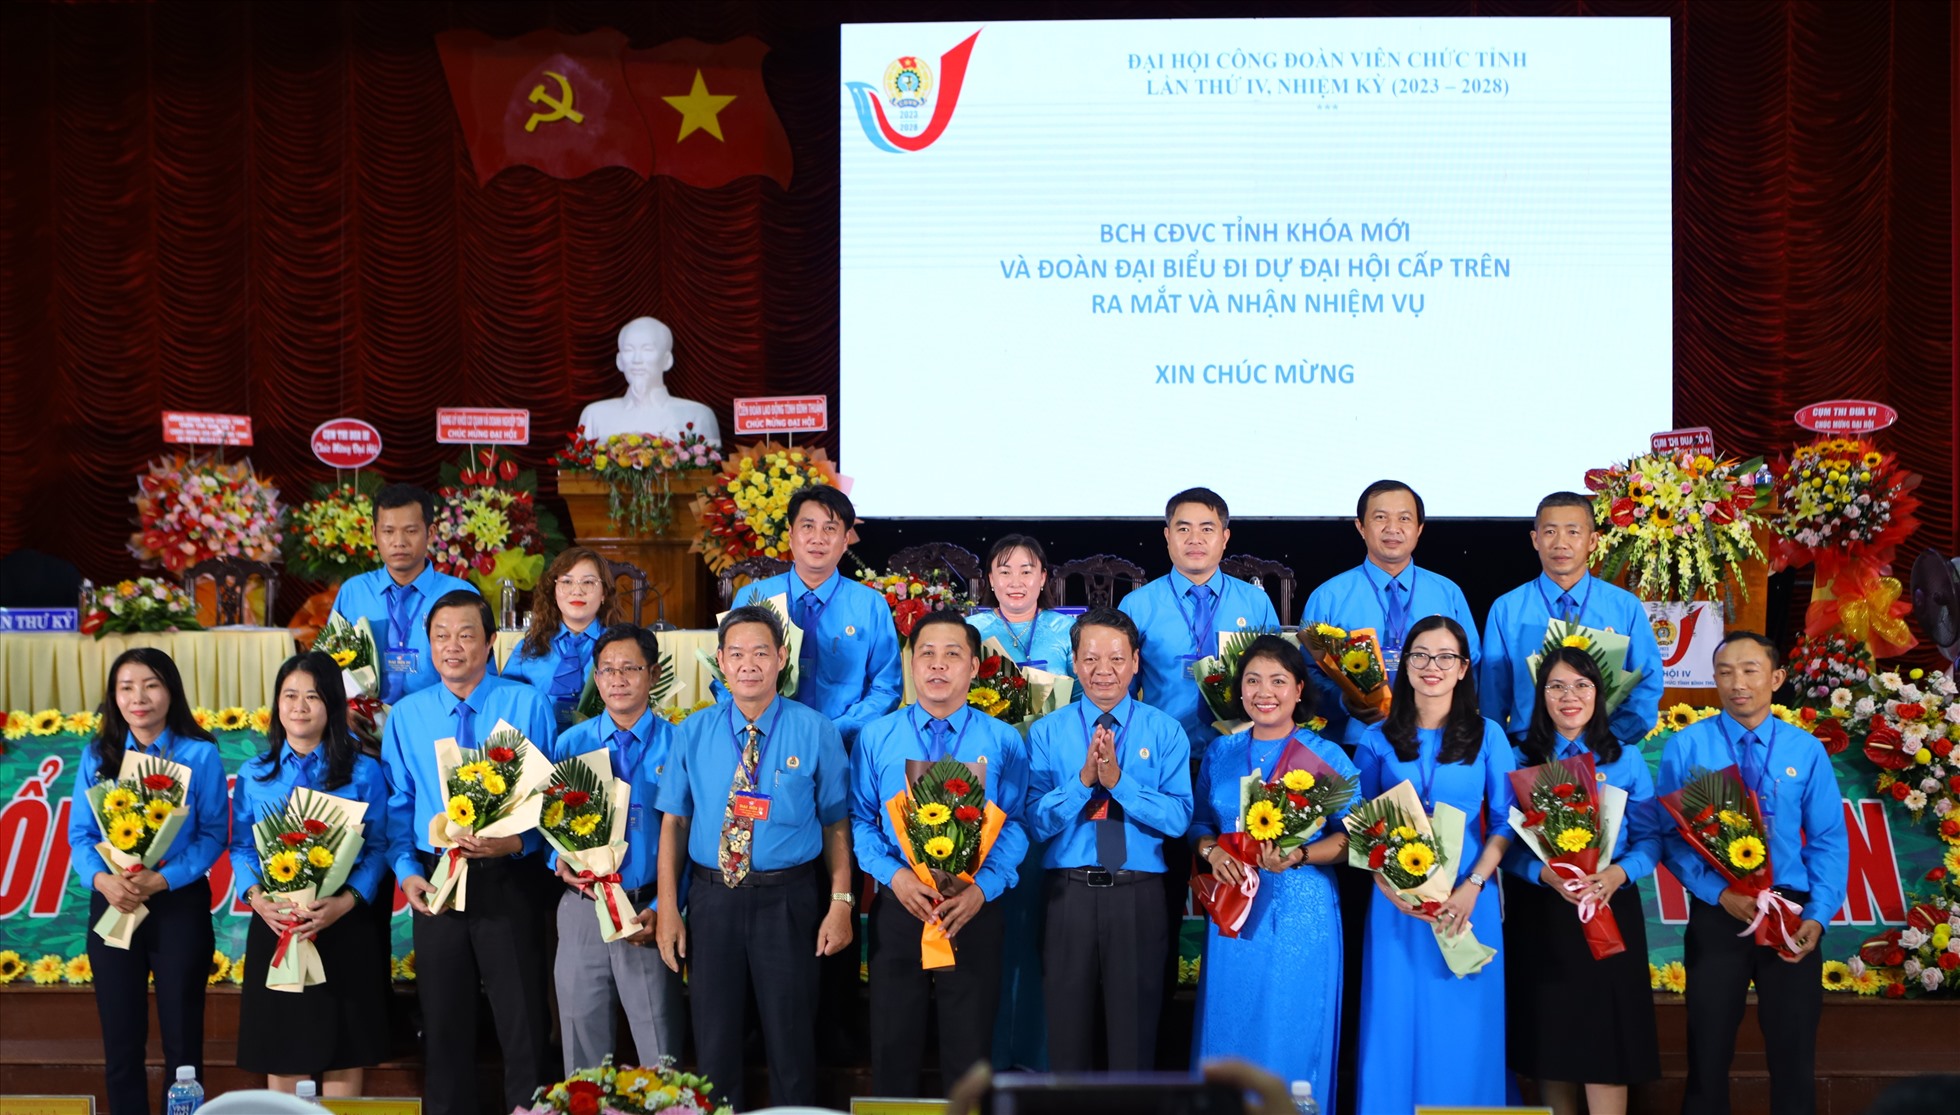 Ban thường vụ LĐLĐ tỉnh Bình Thuận trao hoa chúc mừng Ban chấp hành CĐVC tỉnh Bình Thuận nhiệm kì 2023 - 2028 ra mắt Đại hội. Ảnh: Duy Tuấn